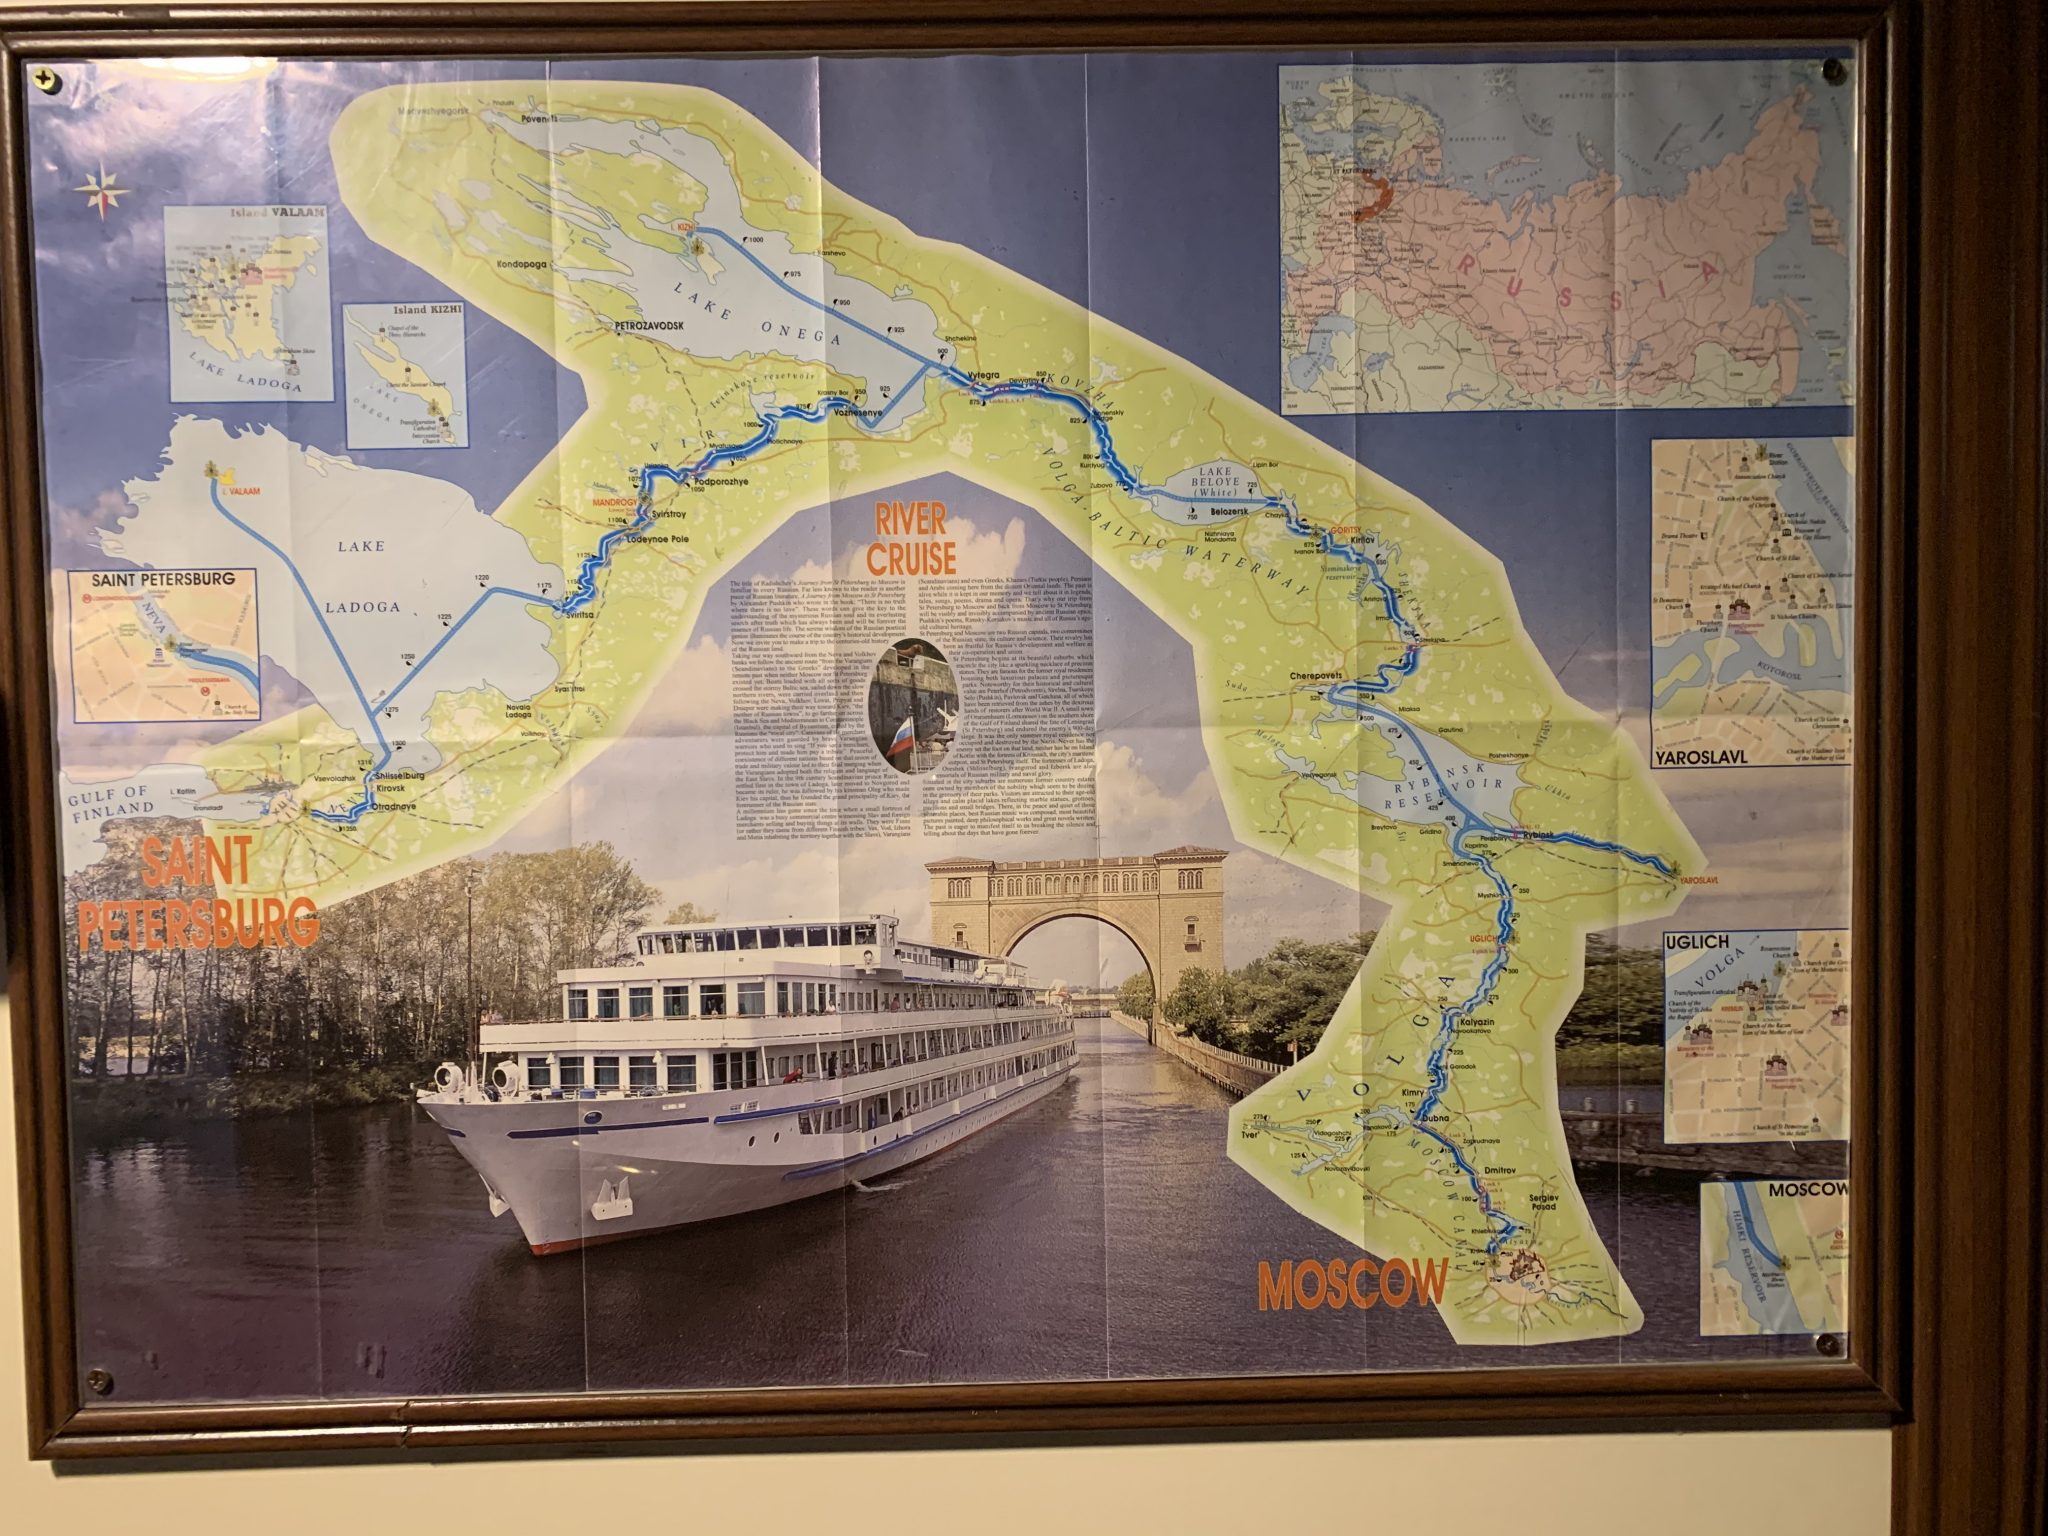 Volga River cruise map